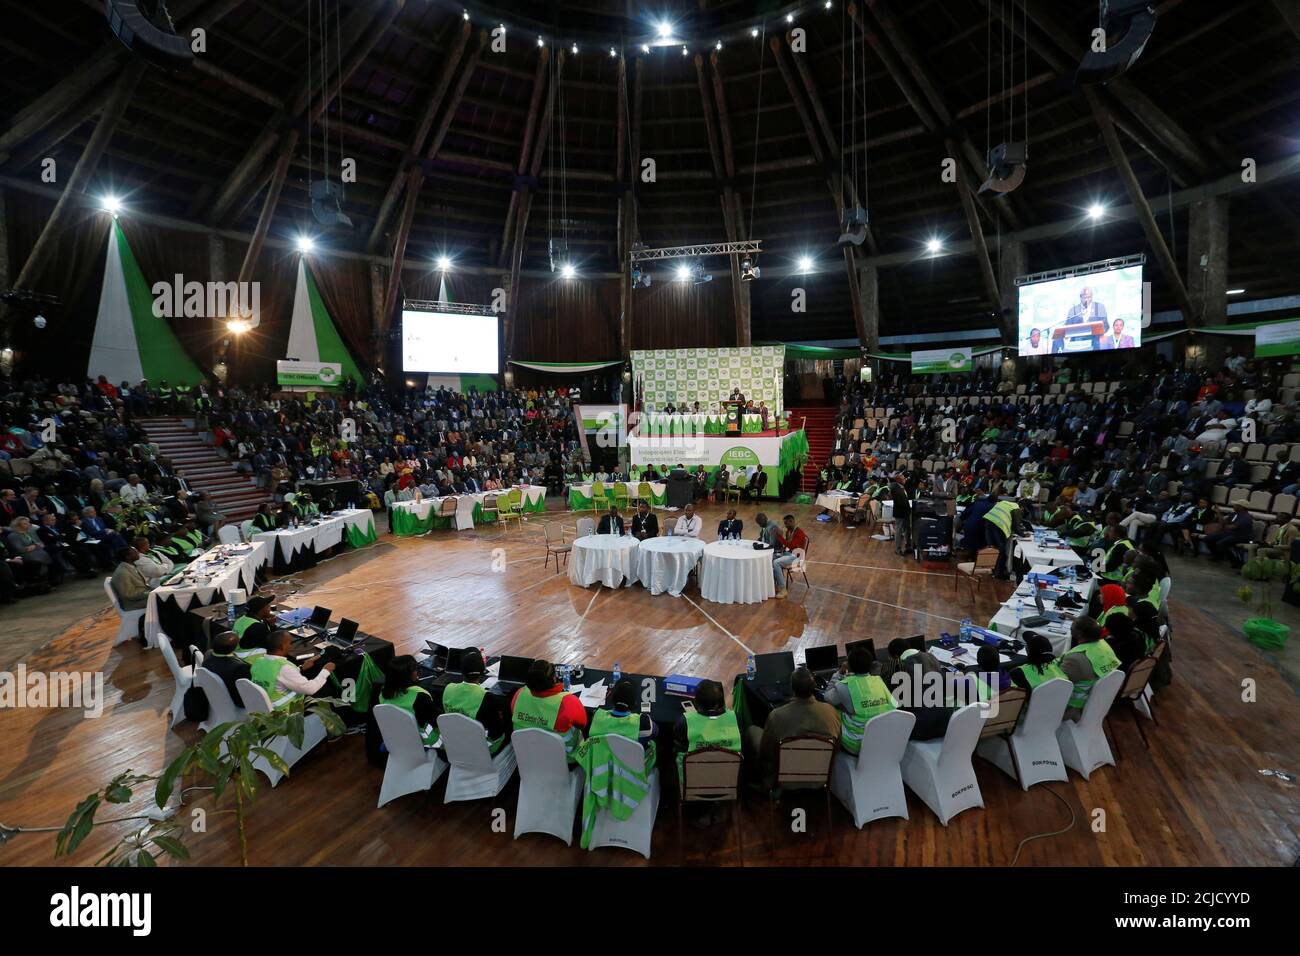 La Comisión independiente Electoral y de Fronteras de Kenya (IEBC) se prepara para anunciar los resultados de las elecciones en el Bomas de Kenya, en Nairobi, el 11 de agosto de 2017. REUTERS/Thomas Mukoya Foto de stock